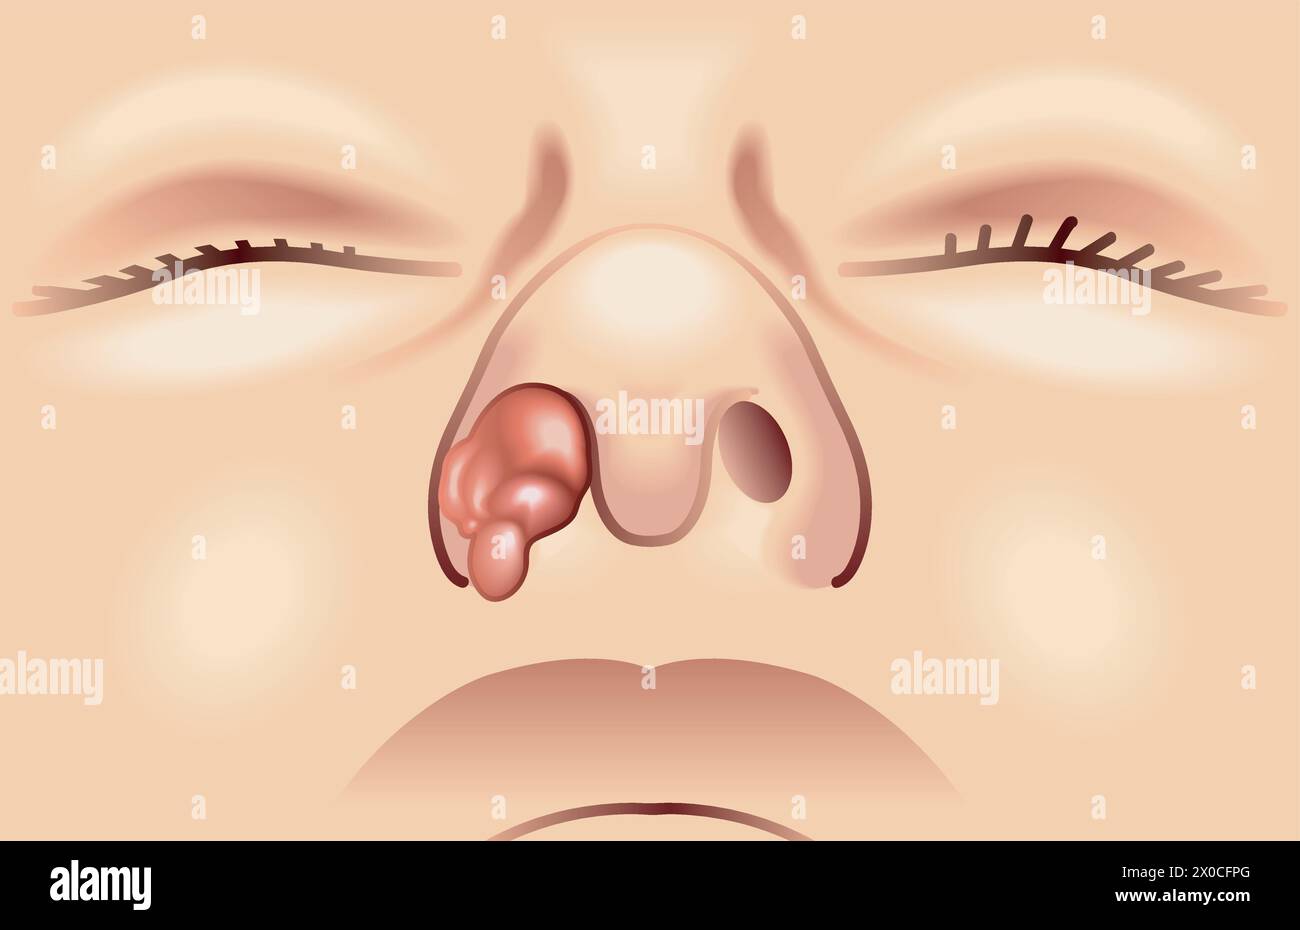 Illustration médicale d'une tumeur nasale Illustration de Vecteur